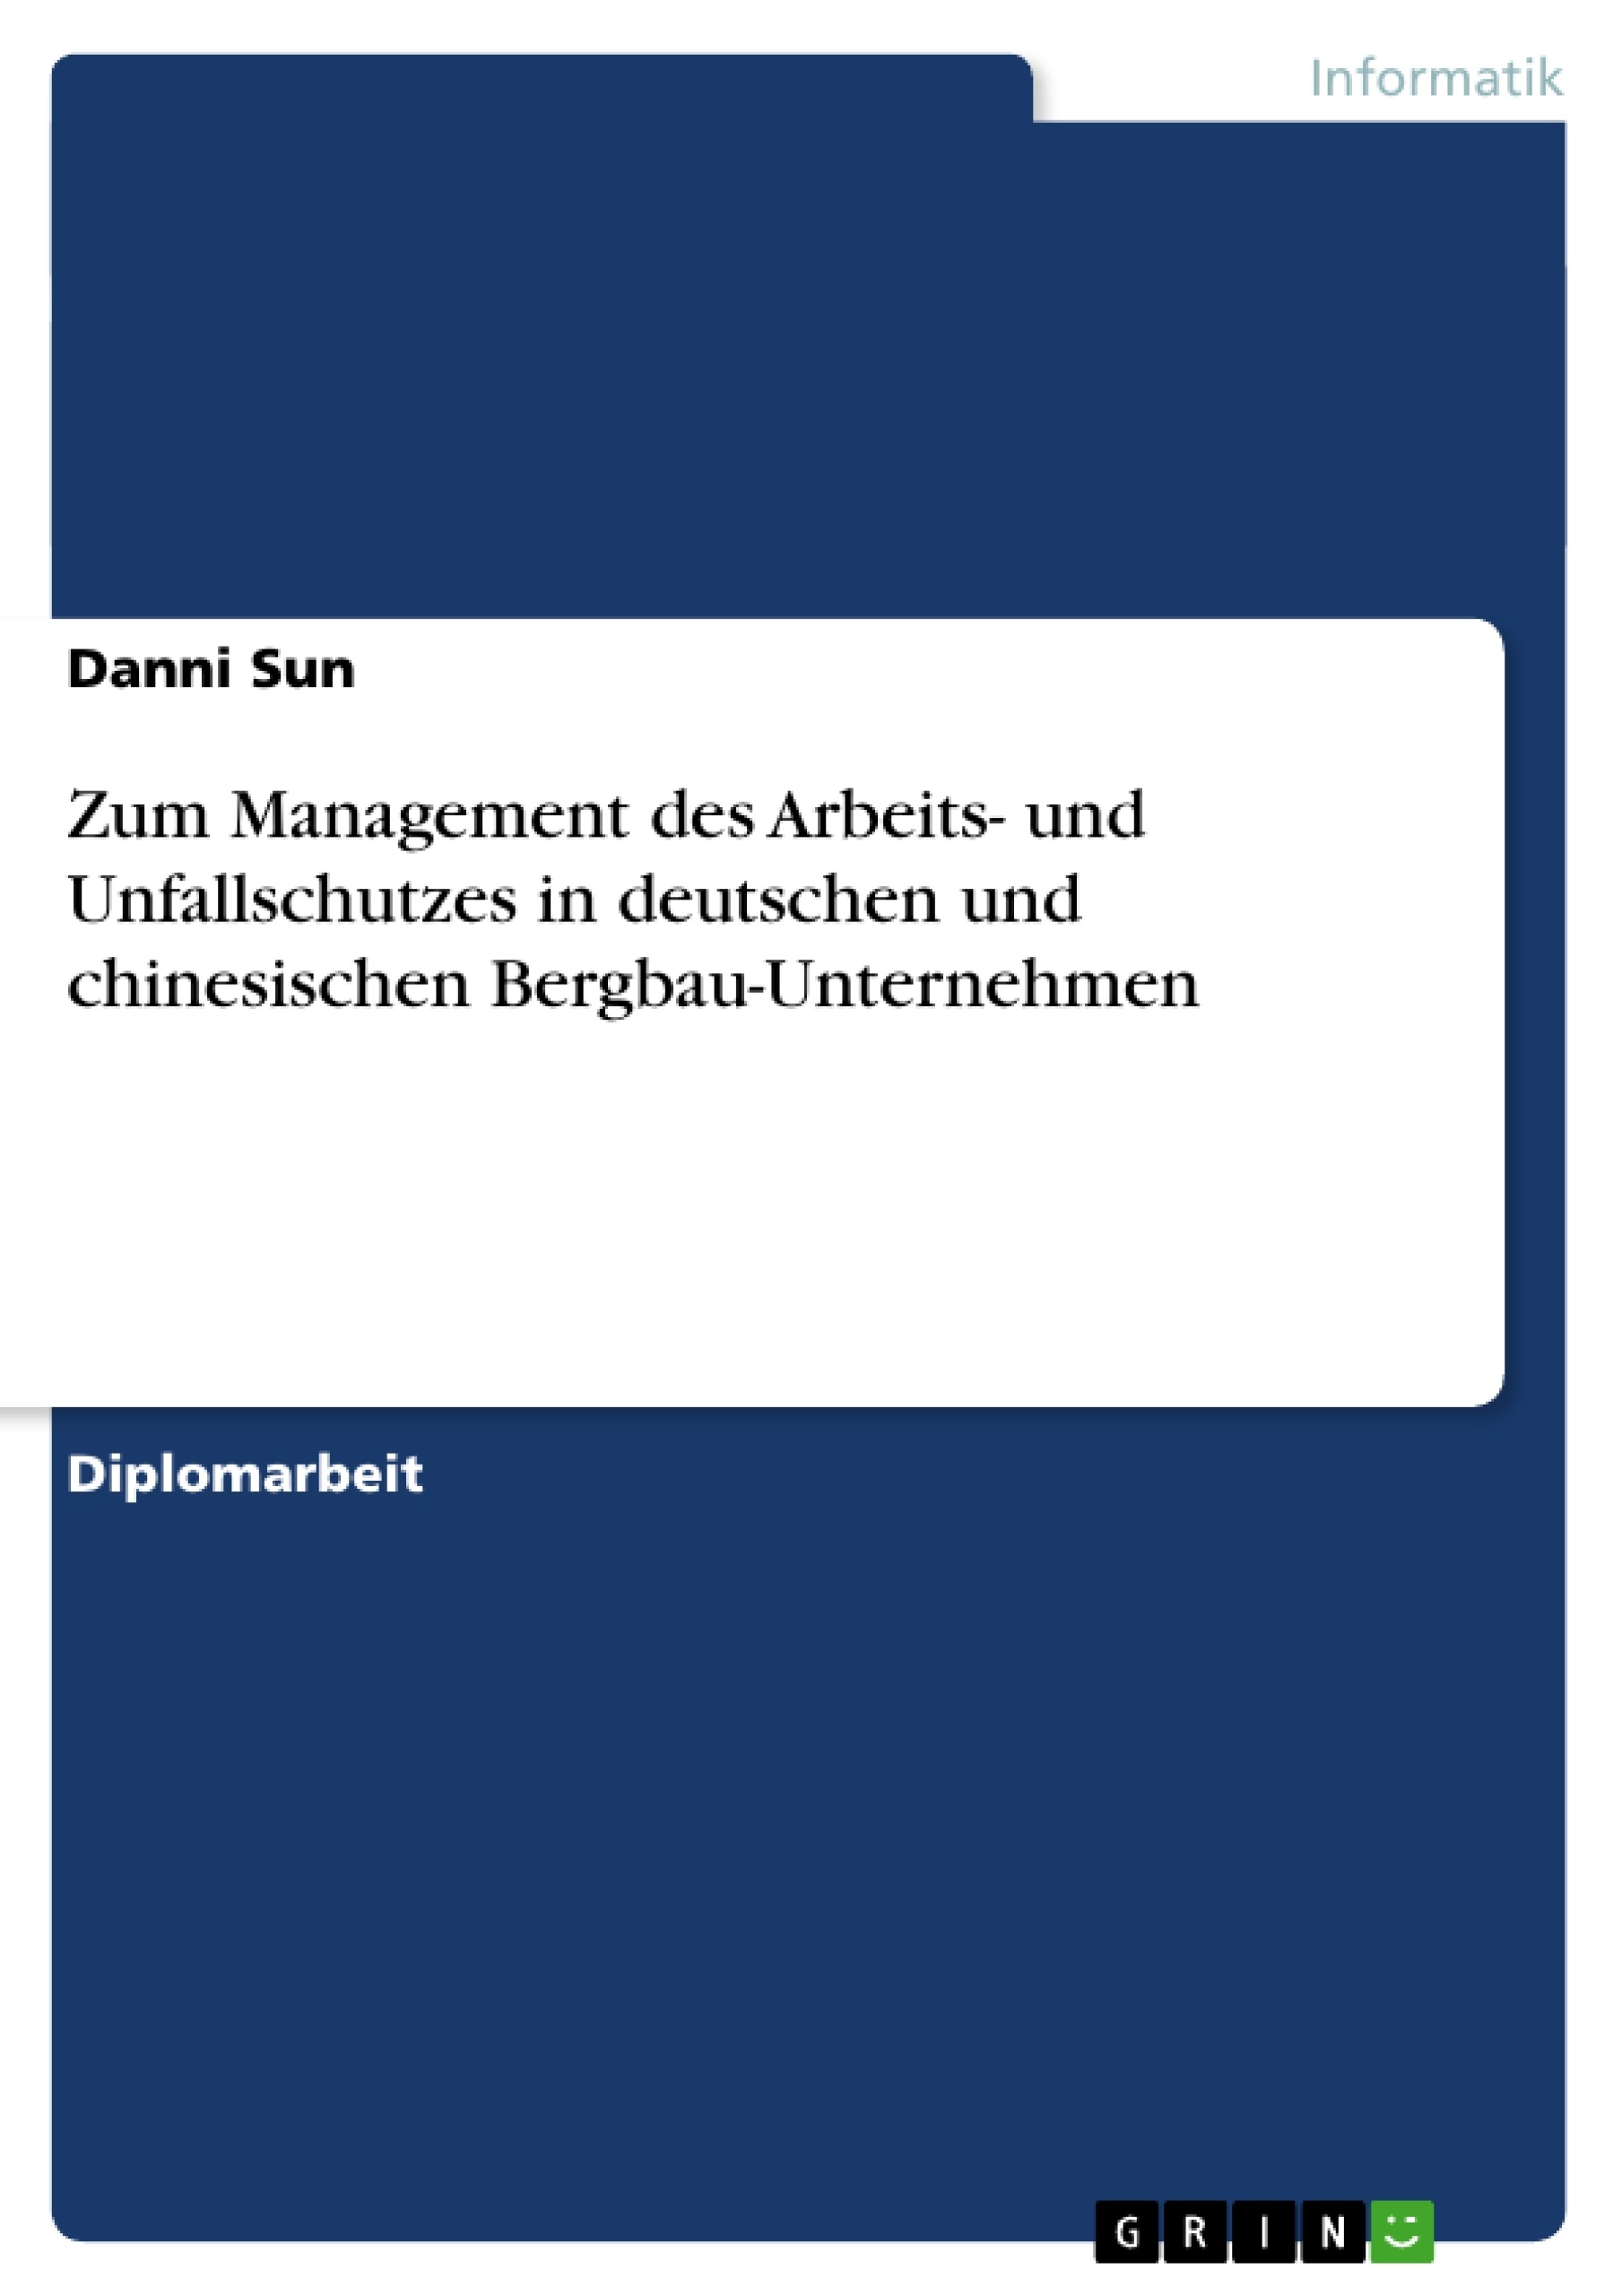 Título: Zum Management des Arbeits- und Unfallschutzes in deutschen und chinesischen Bergbau-Unternehmen